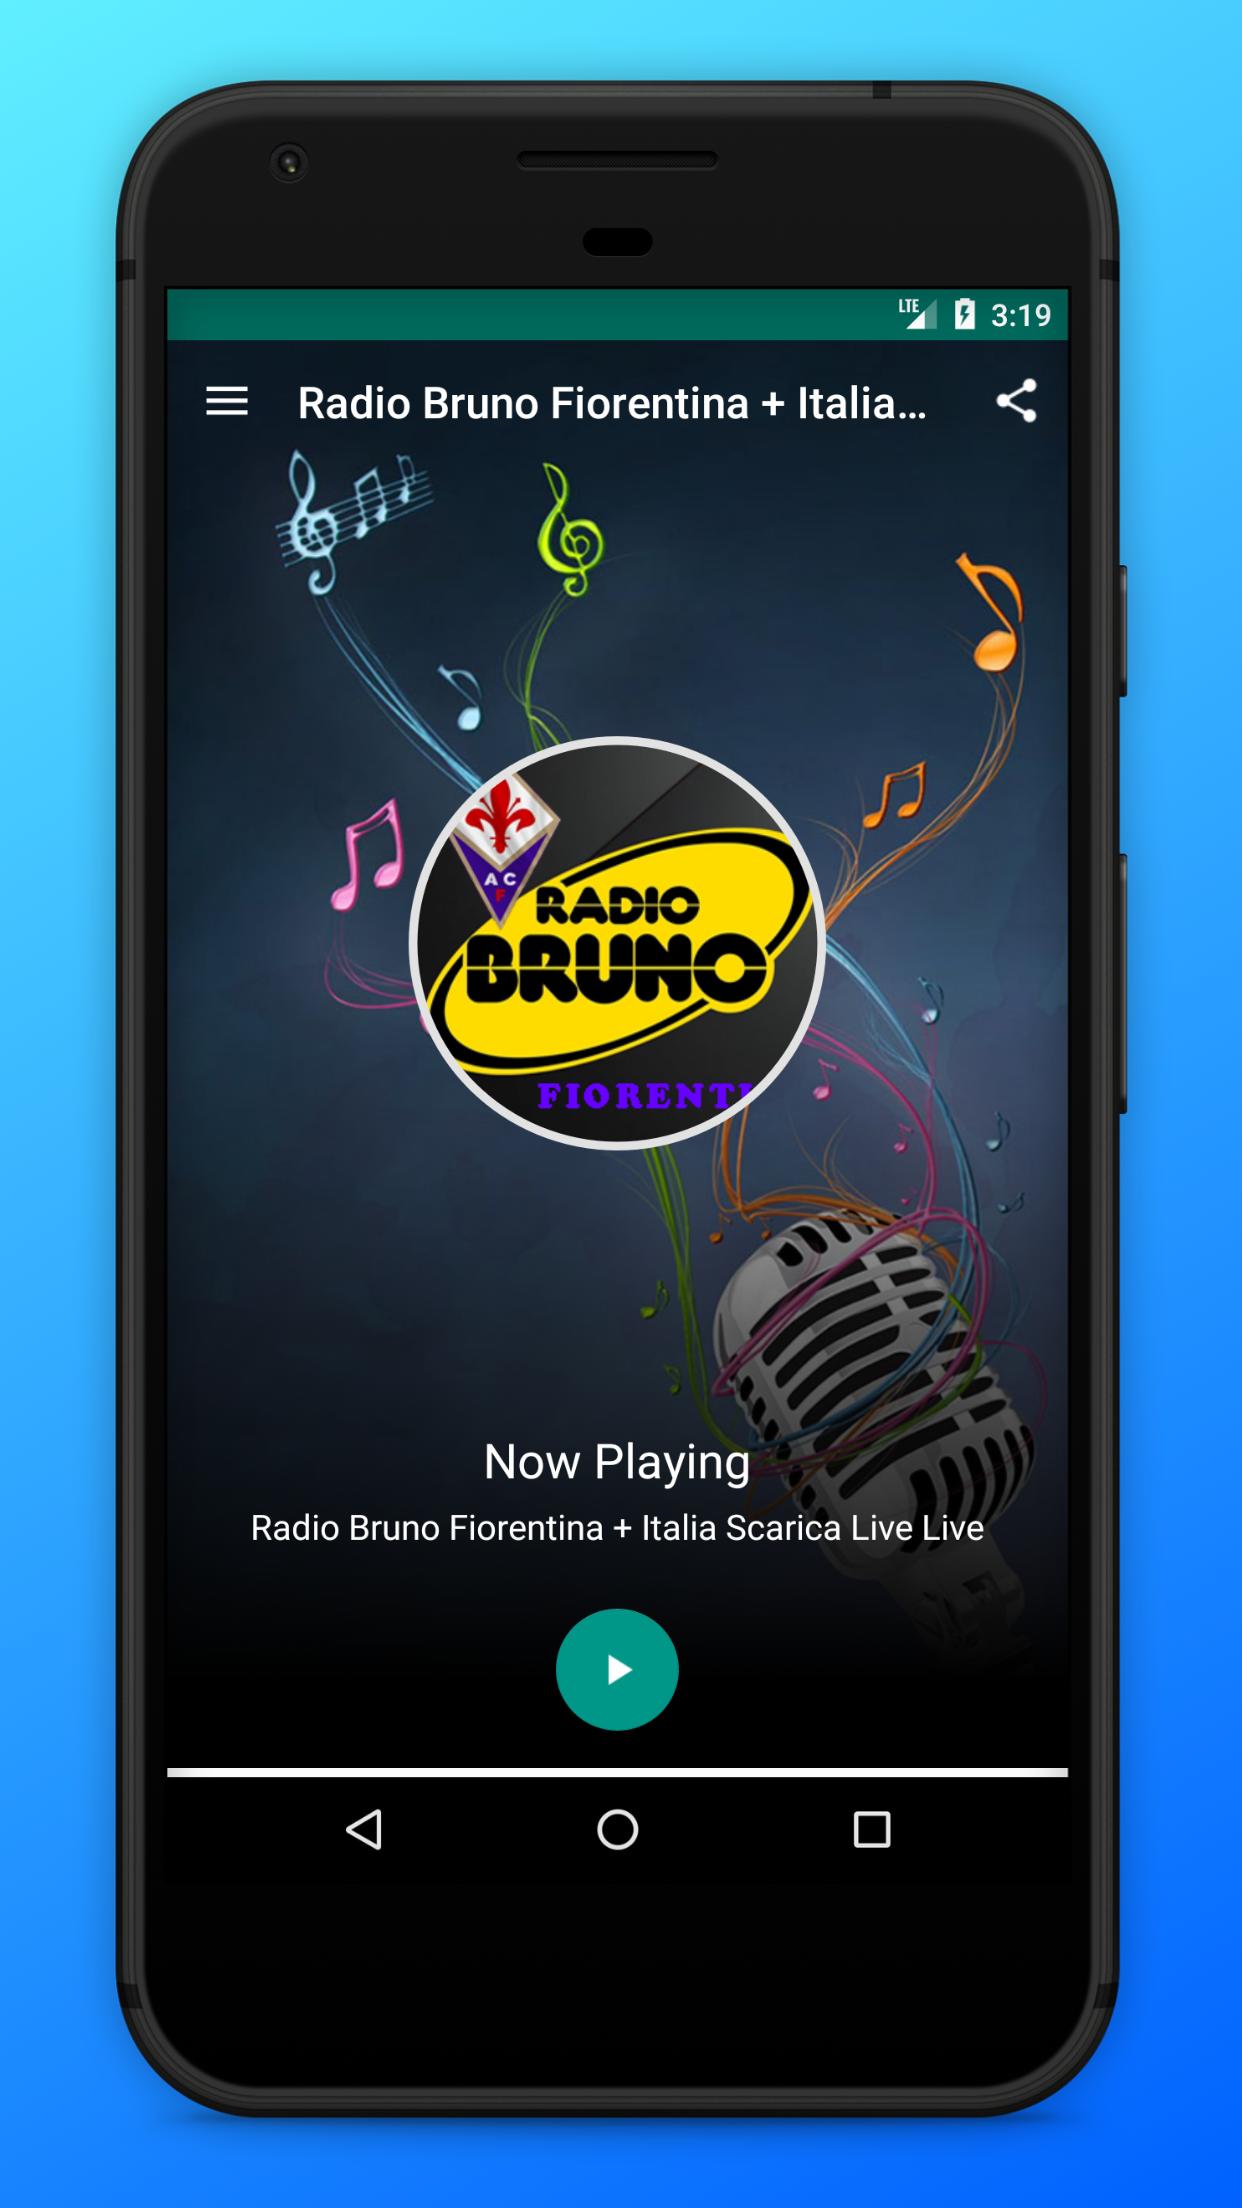 Radio Bruno Fiorentina + Italia Scarica Live APK voor Android Download